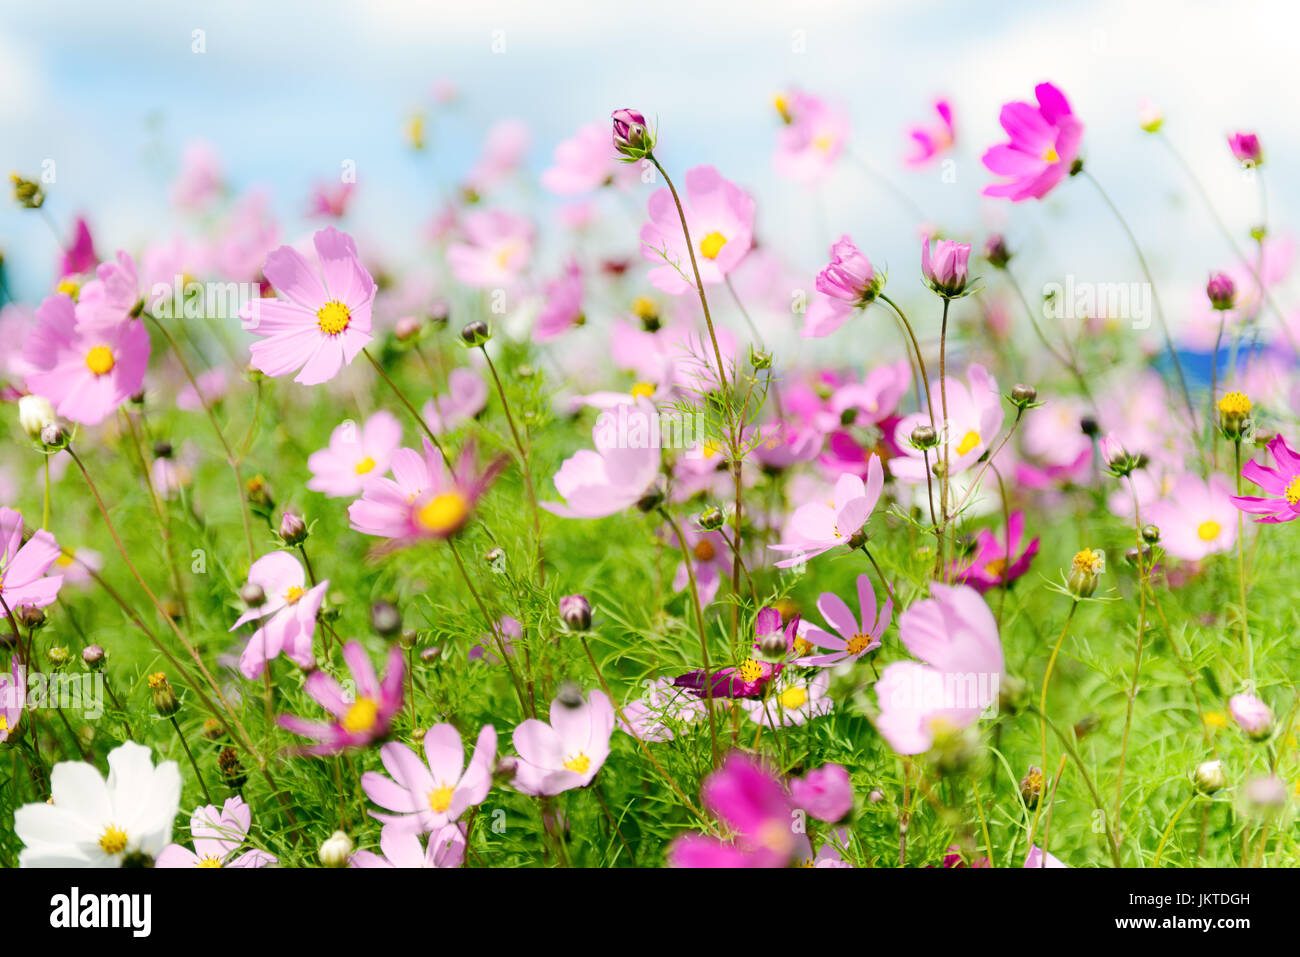 Daisy flowers field against blue sky Stock Photo